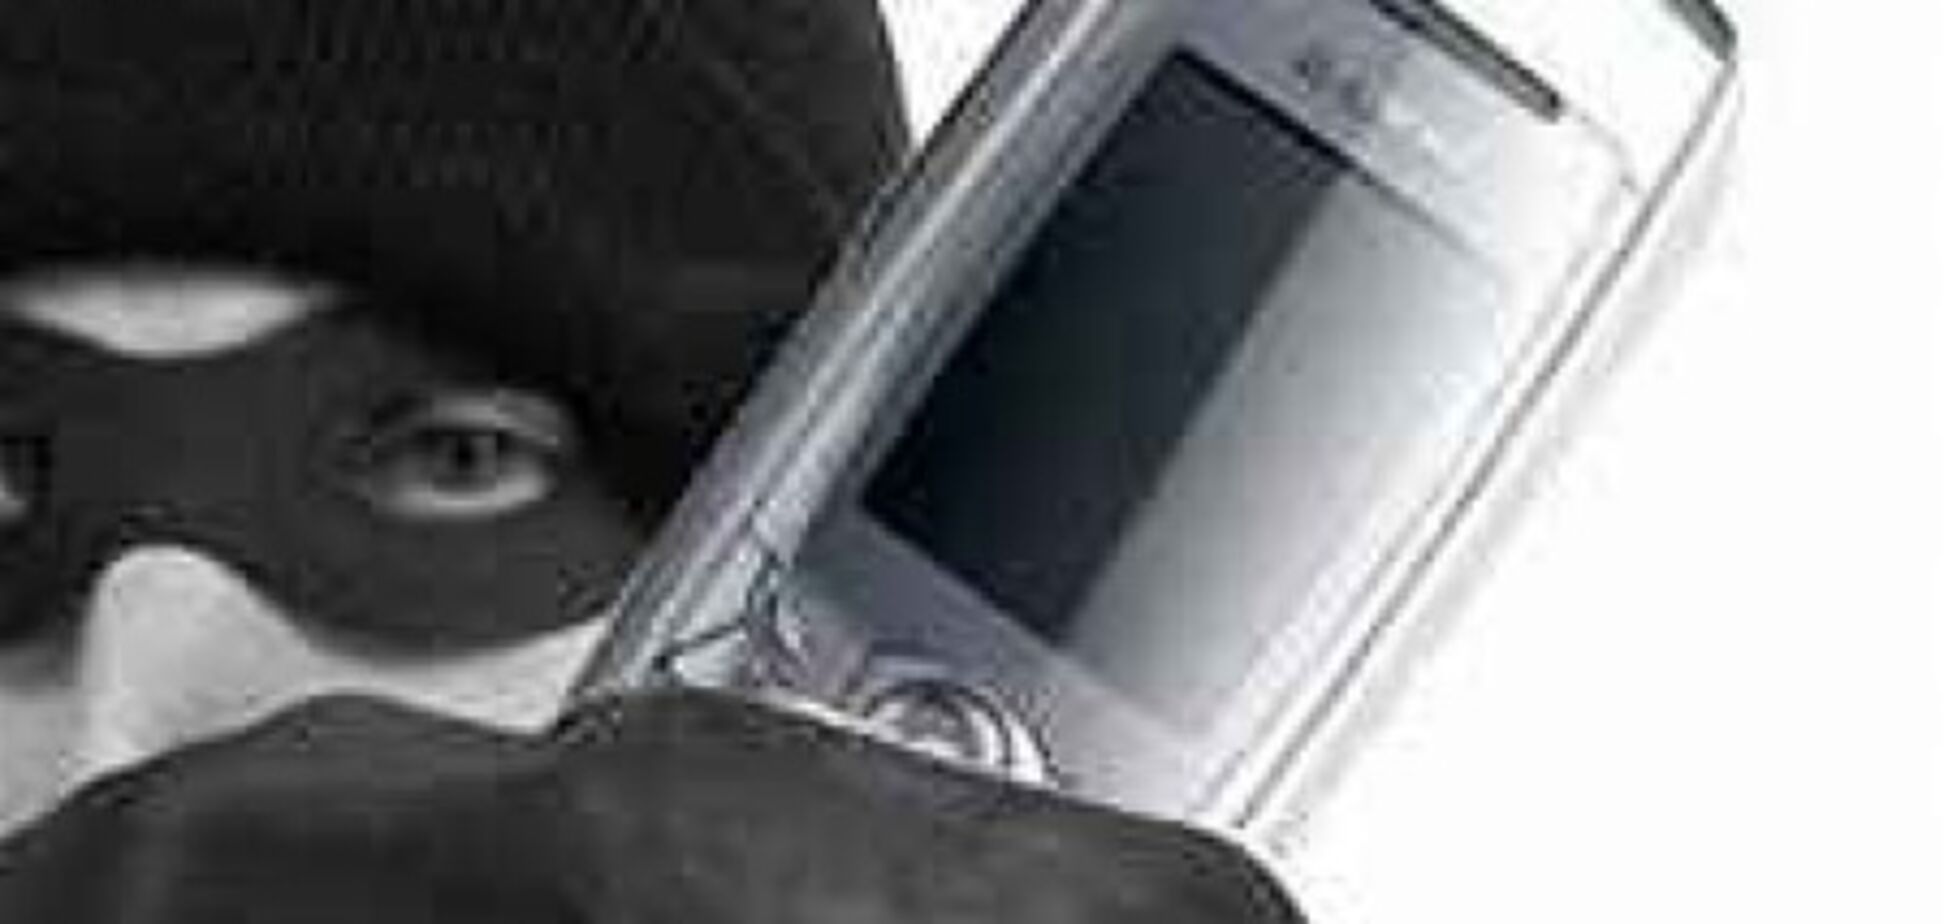 Операторы поддерживают борьбу с крадеными мобилками